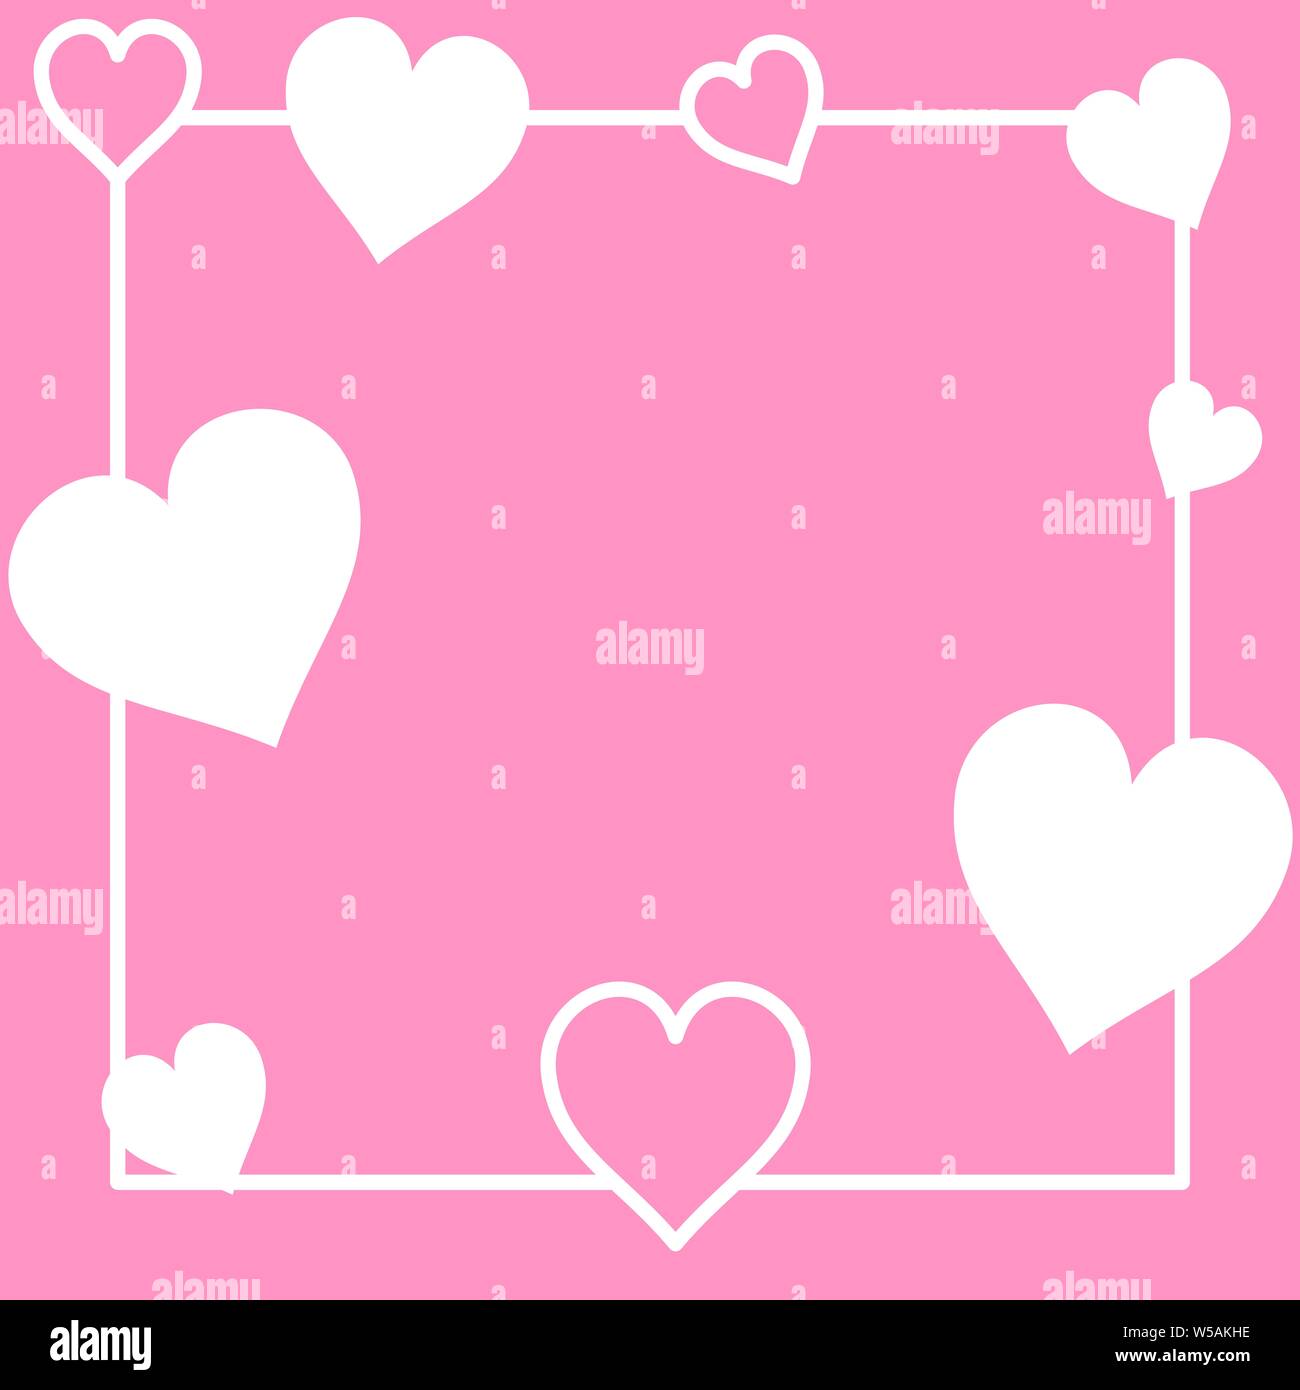 Ein Rahmen einer dekorativen Karte auf einem rosa Hintergrund. Sie können diesem dekorativen Design benutzerdefinierten Text hinzufügen. Dies kann für Grußkarten, Valentinstag-Karten, liebevolle Dinge oder für alles verwendet werden. Stockfoto